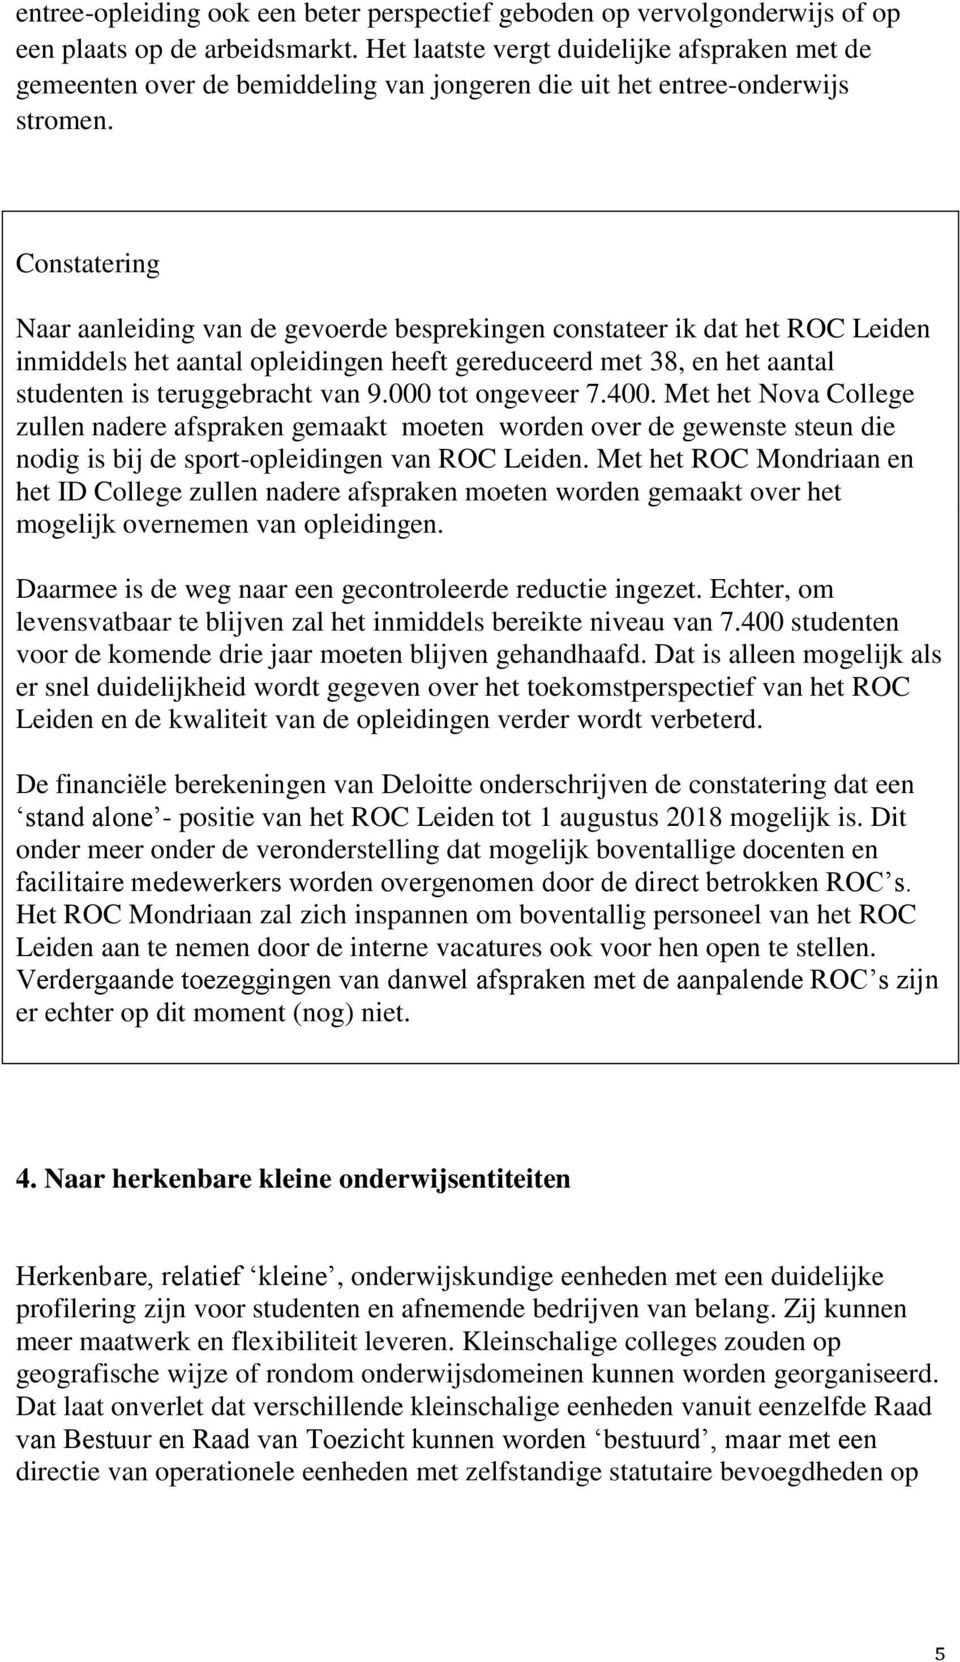 Constatering Naar aanleiding van de gevoerde besprekingen constateer ik dat het ROC Leiden inmiddels het aantal opleidingen heeft gereduceerd met 38, en het aantal studenten is teruggebracht van 9.